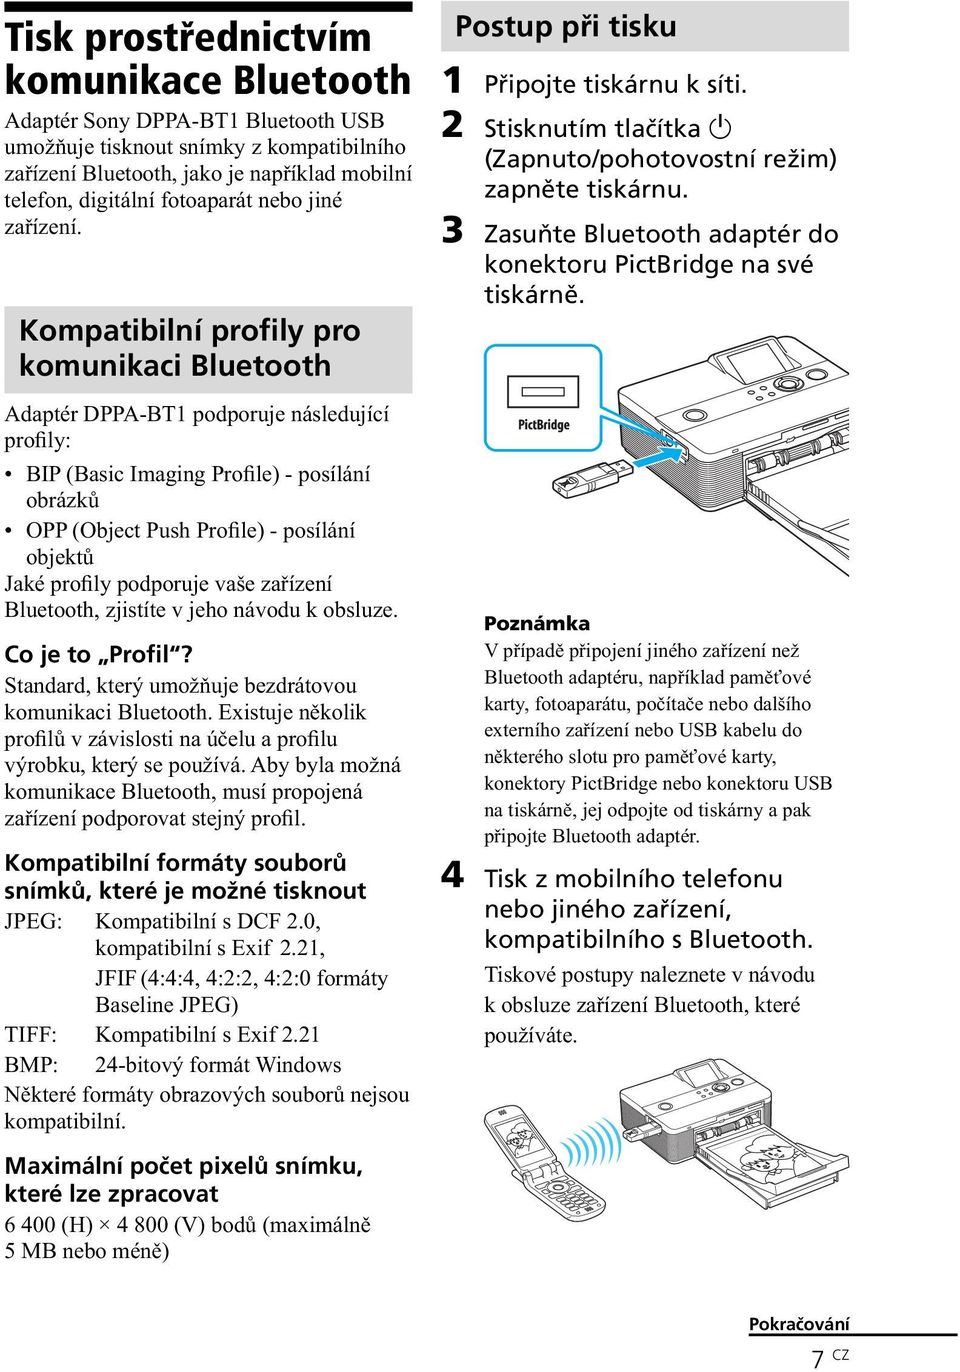 Kompatibilní profily pro komunikaci Bluetooth Adaptér DPPA-BT1 podporuje následující profily: BIP (Basic Imaging Profile) - posílání obrázků OPP (Object Push Profile) - posílání objektů Jaké profily